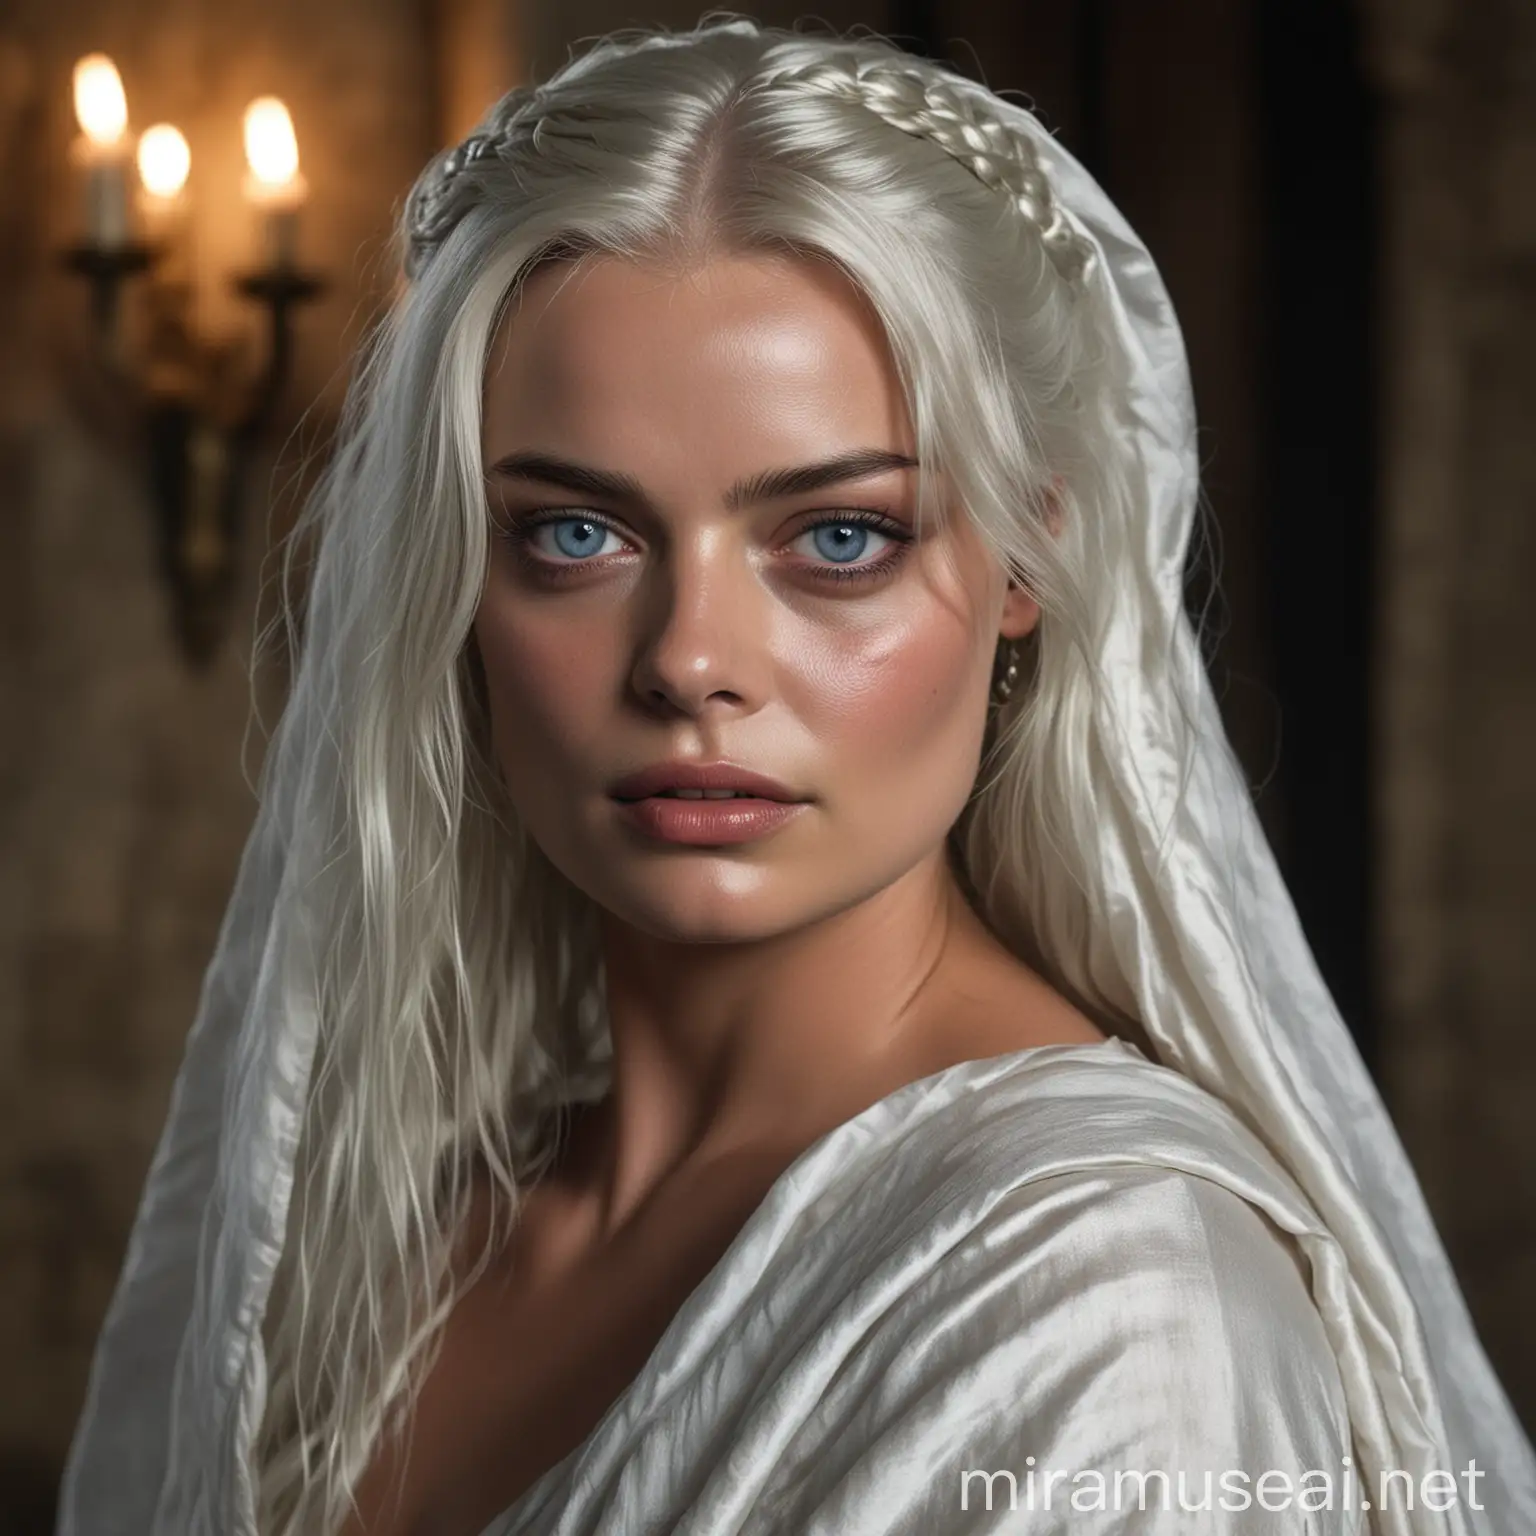 Margot Robbie en tant que jeune princesse de 15 ans de la Maison Targaryen de l'Ancienne Valyria aux yeux clairs avec de longs cheveux blancs-argentés détachés, couverte d'un simple drap de soie blanc dans une chambre sombre du château, regardant avec le regard rougis de larmes son amant
